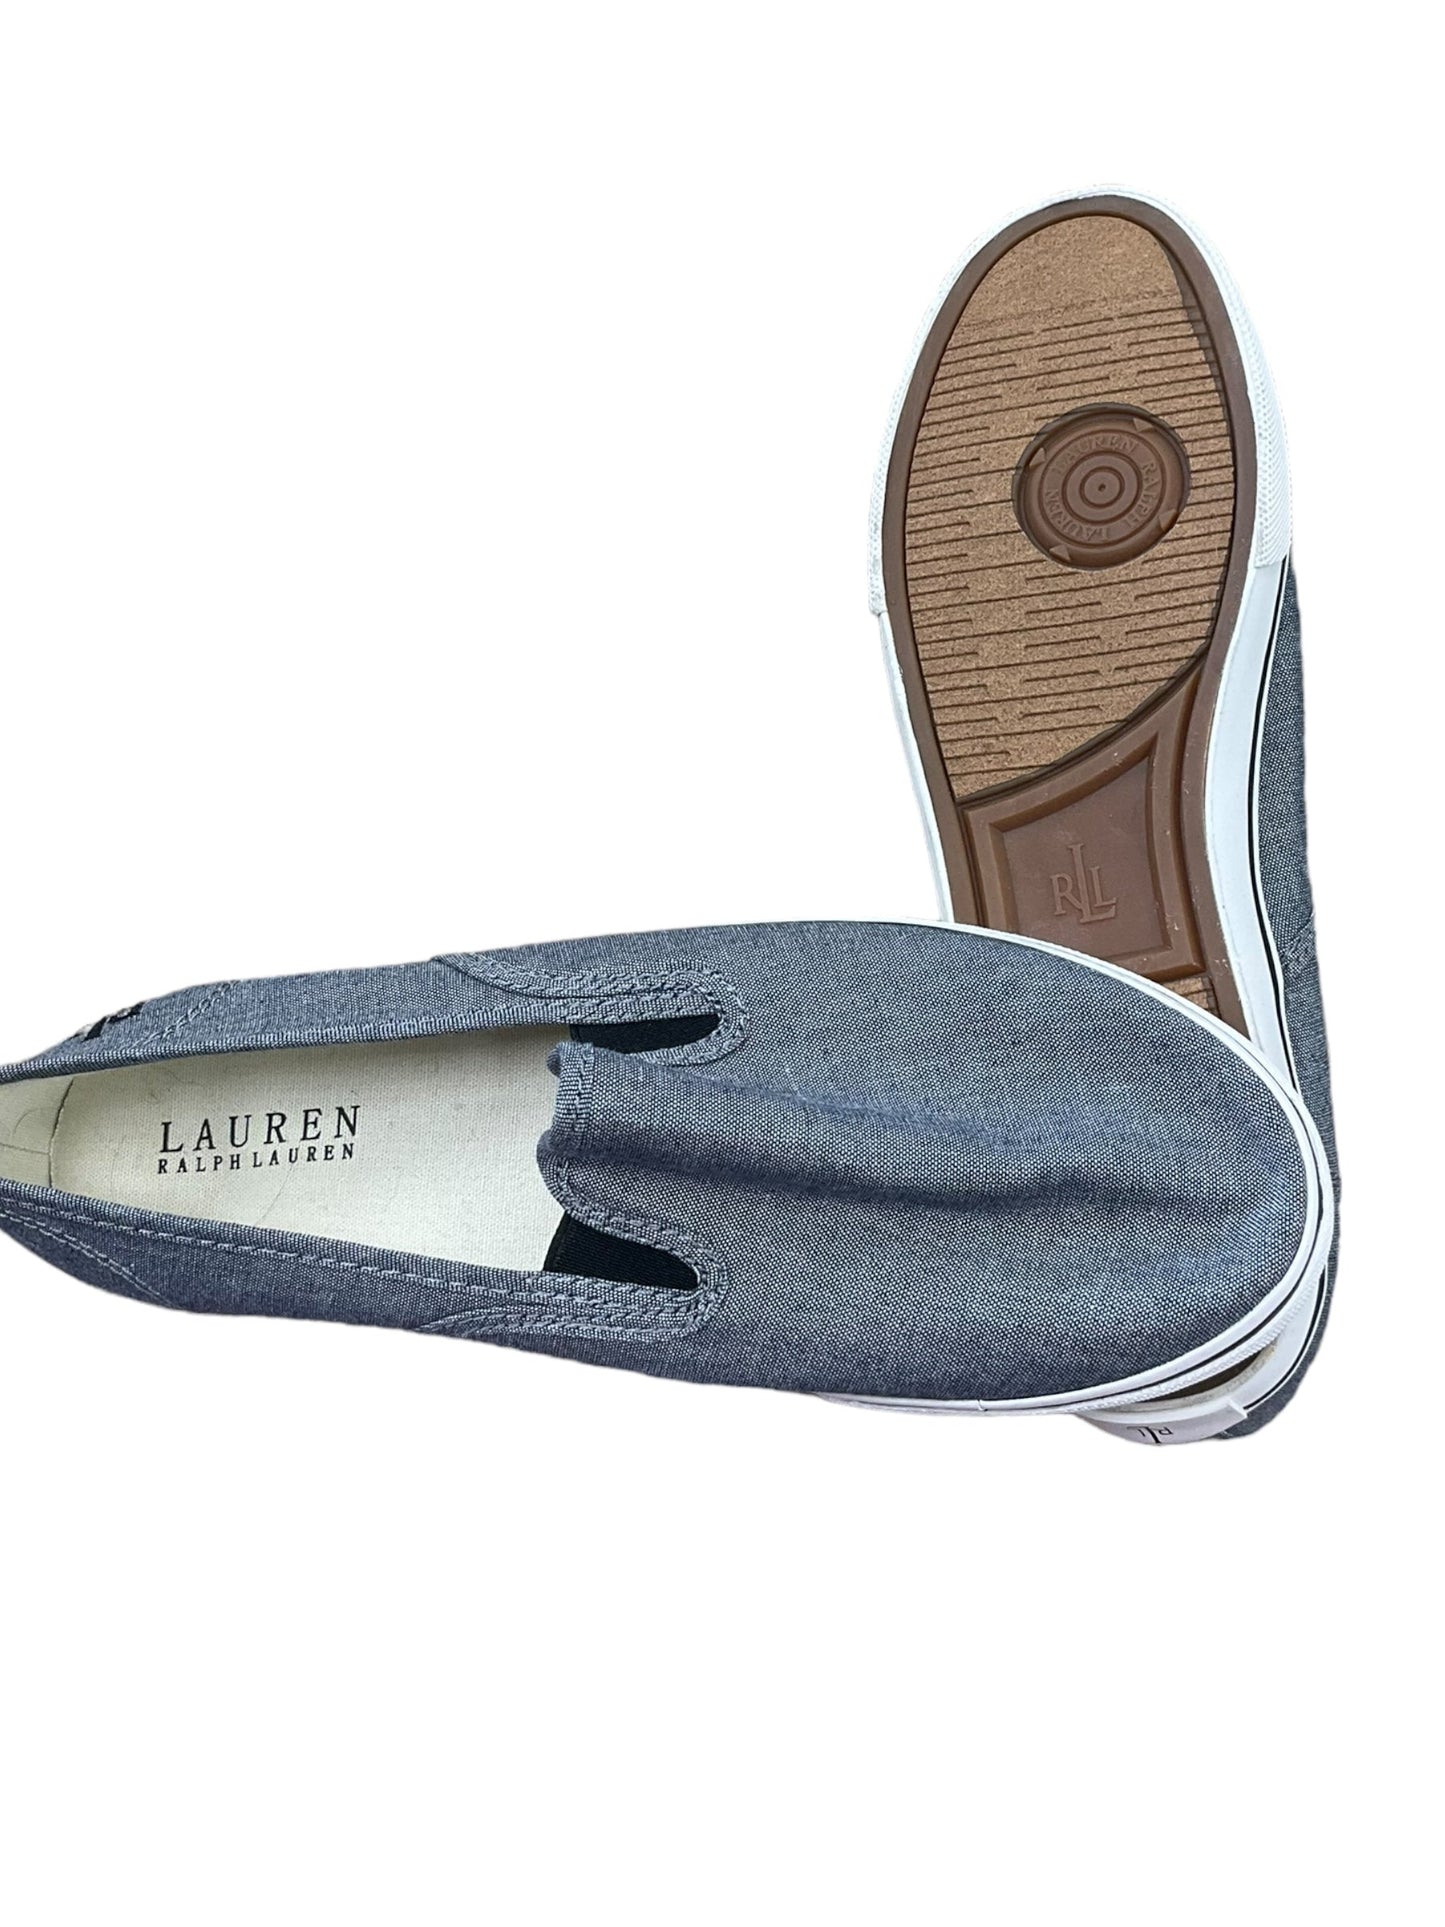 Blue Shoes Flats Lauren By Ralph Lauren, Size 9